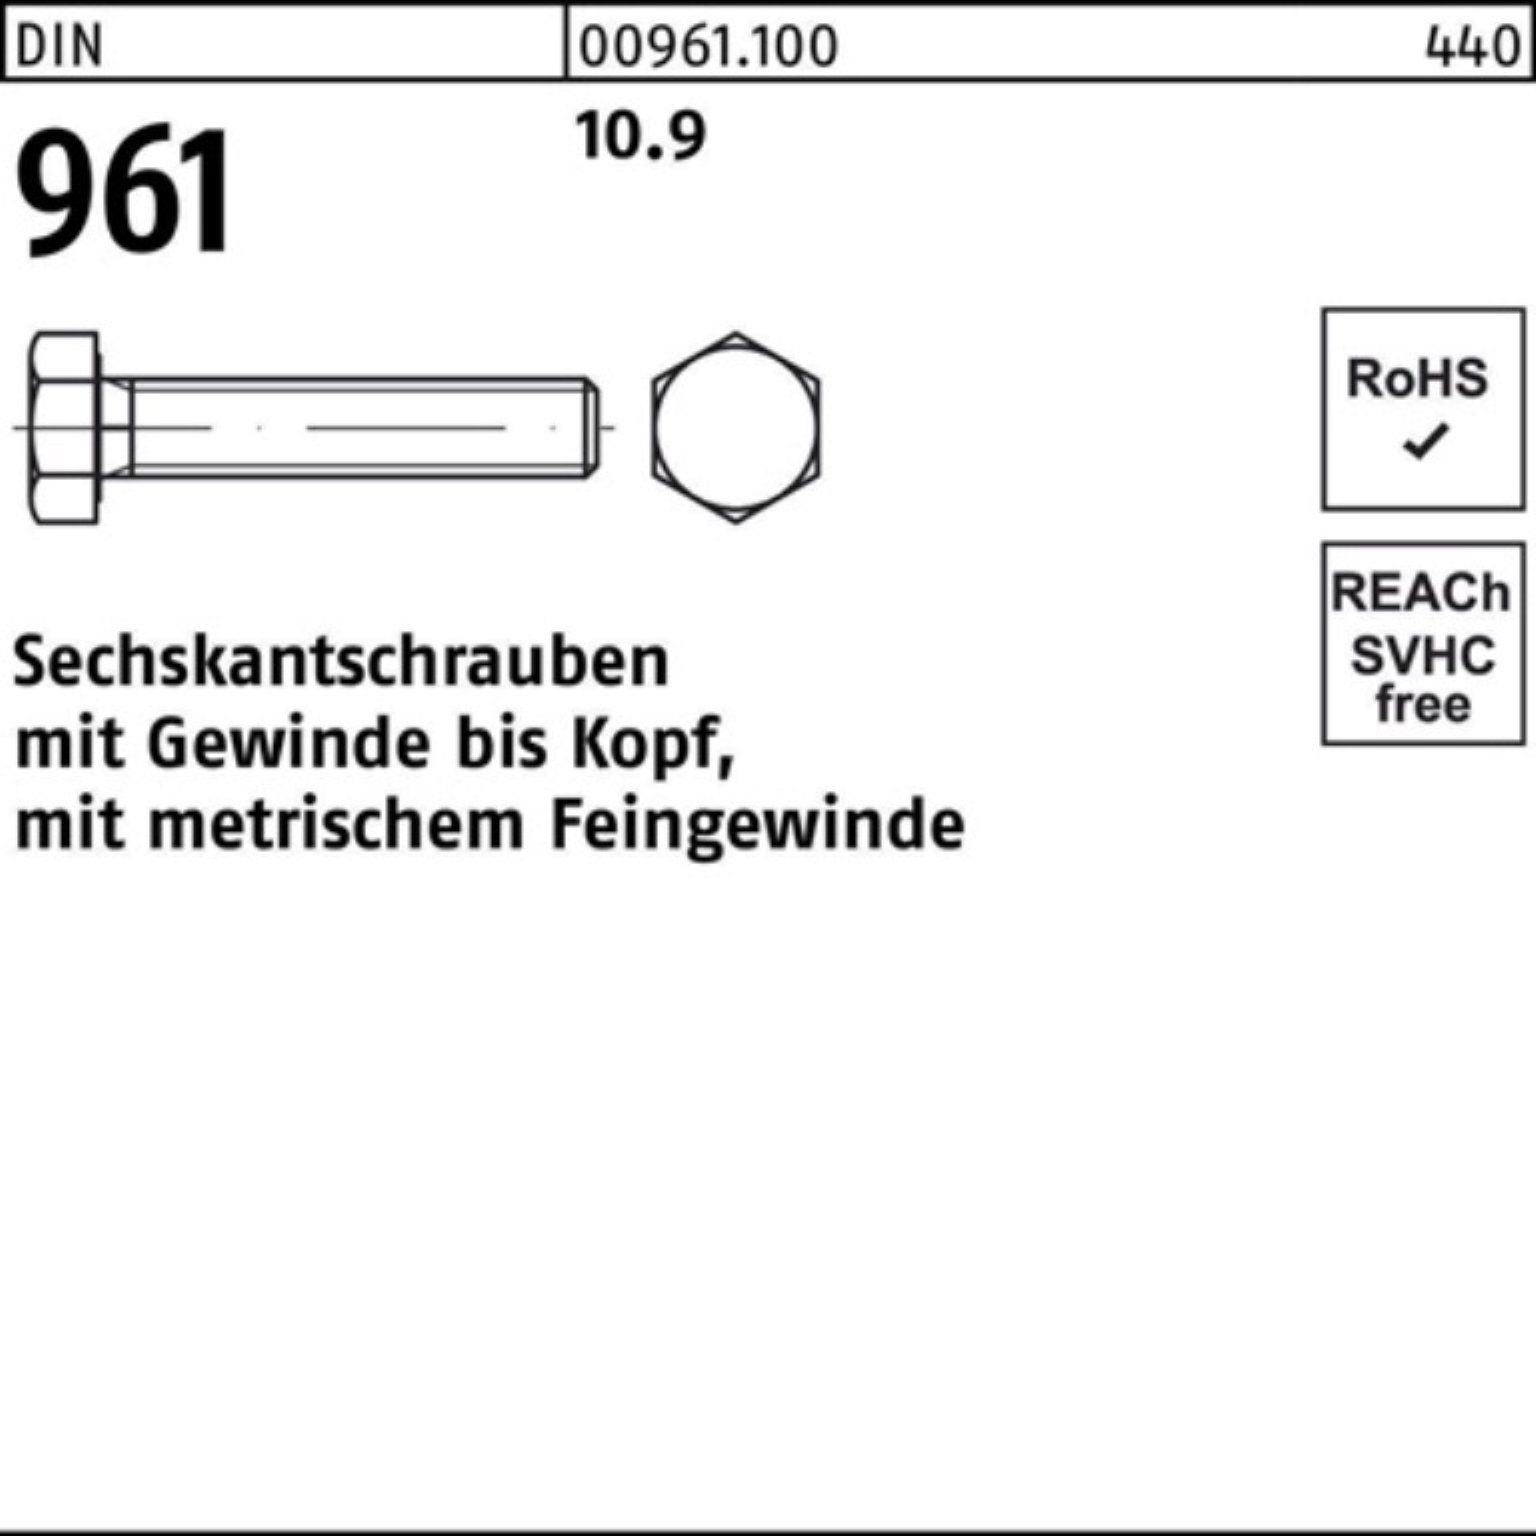 Pack DIN DIN VG Sechskantschraube Reyher 96 Sechskantschraube 10.9 100er Stück 1 961 M36x3x140